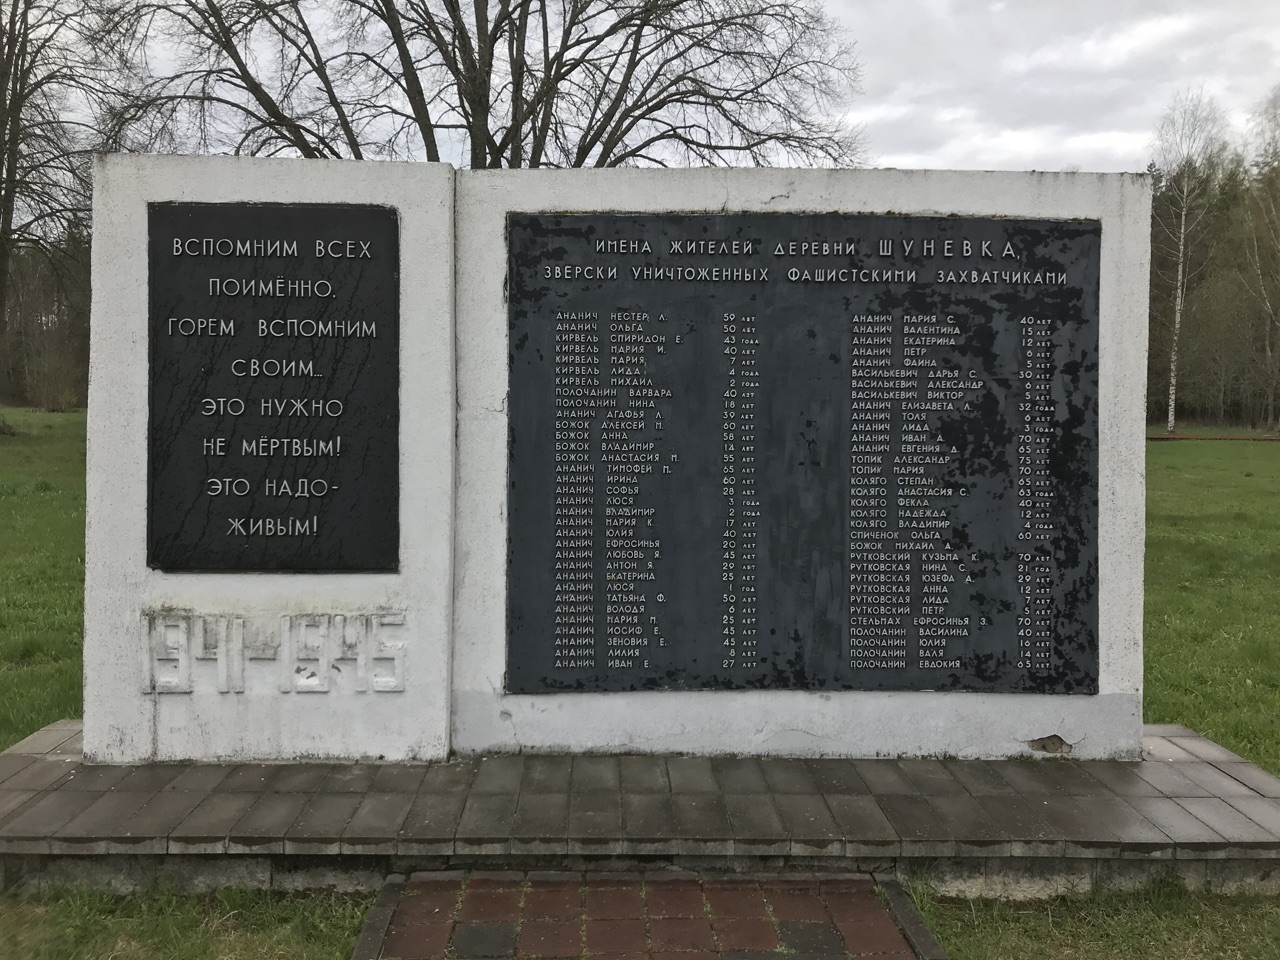 Всего в Шуневка погибло 66 человек Шуневка (мемориальный комплекс), Беларусь